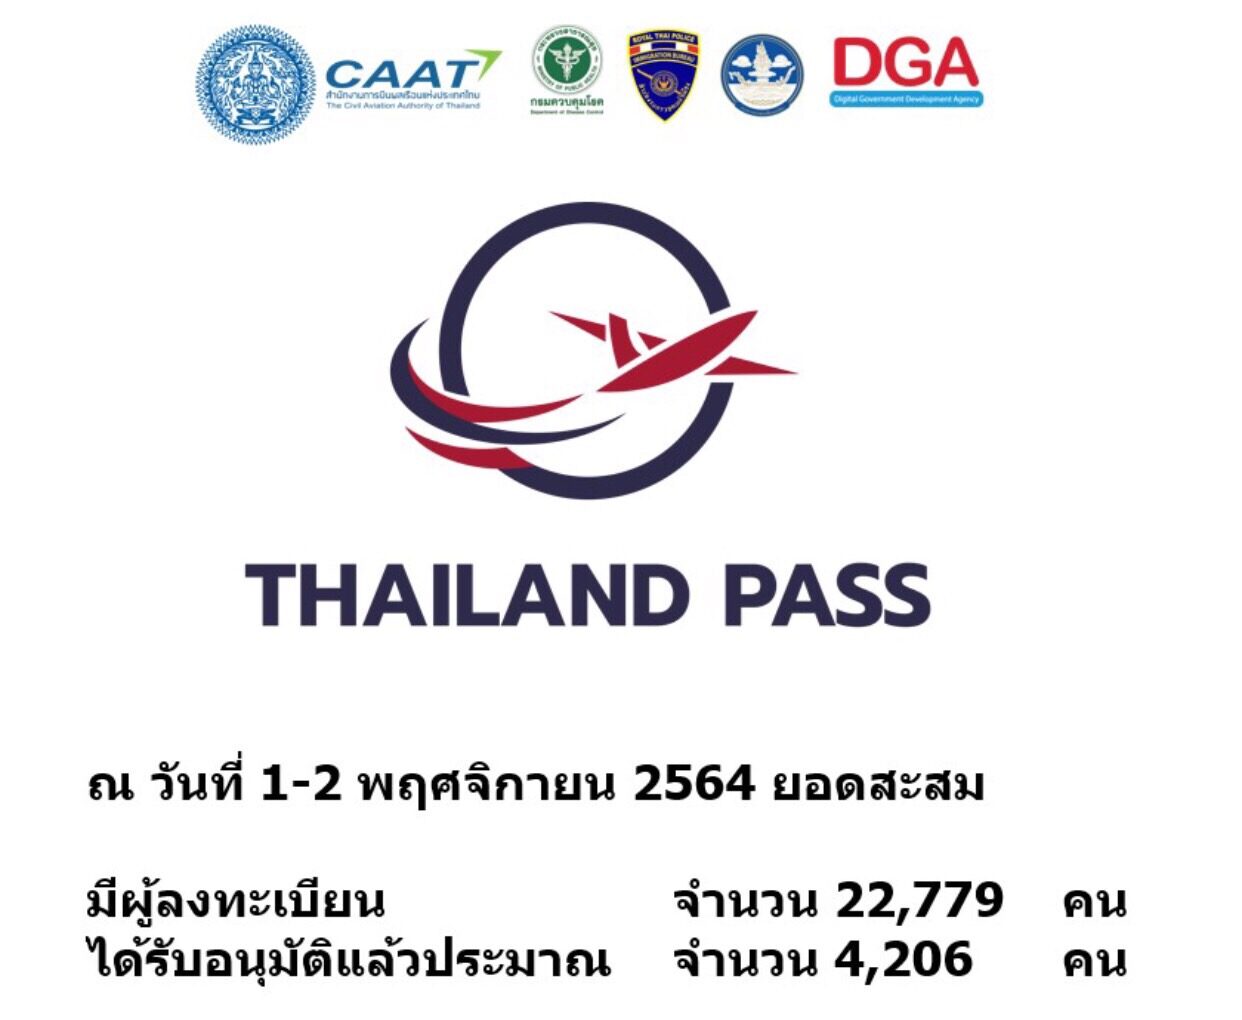 Thẻ thông hành Thái Lan thailand pass